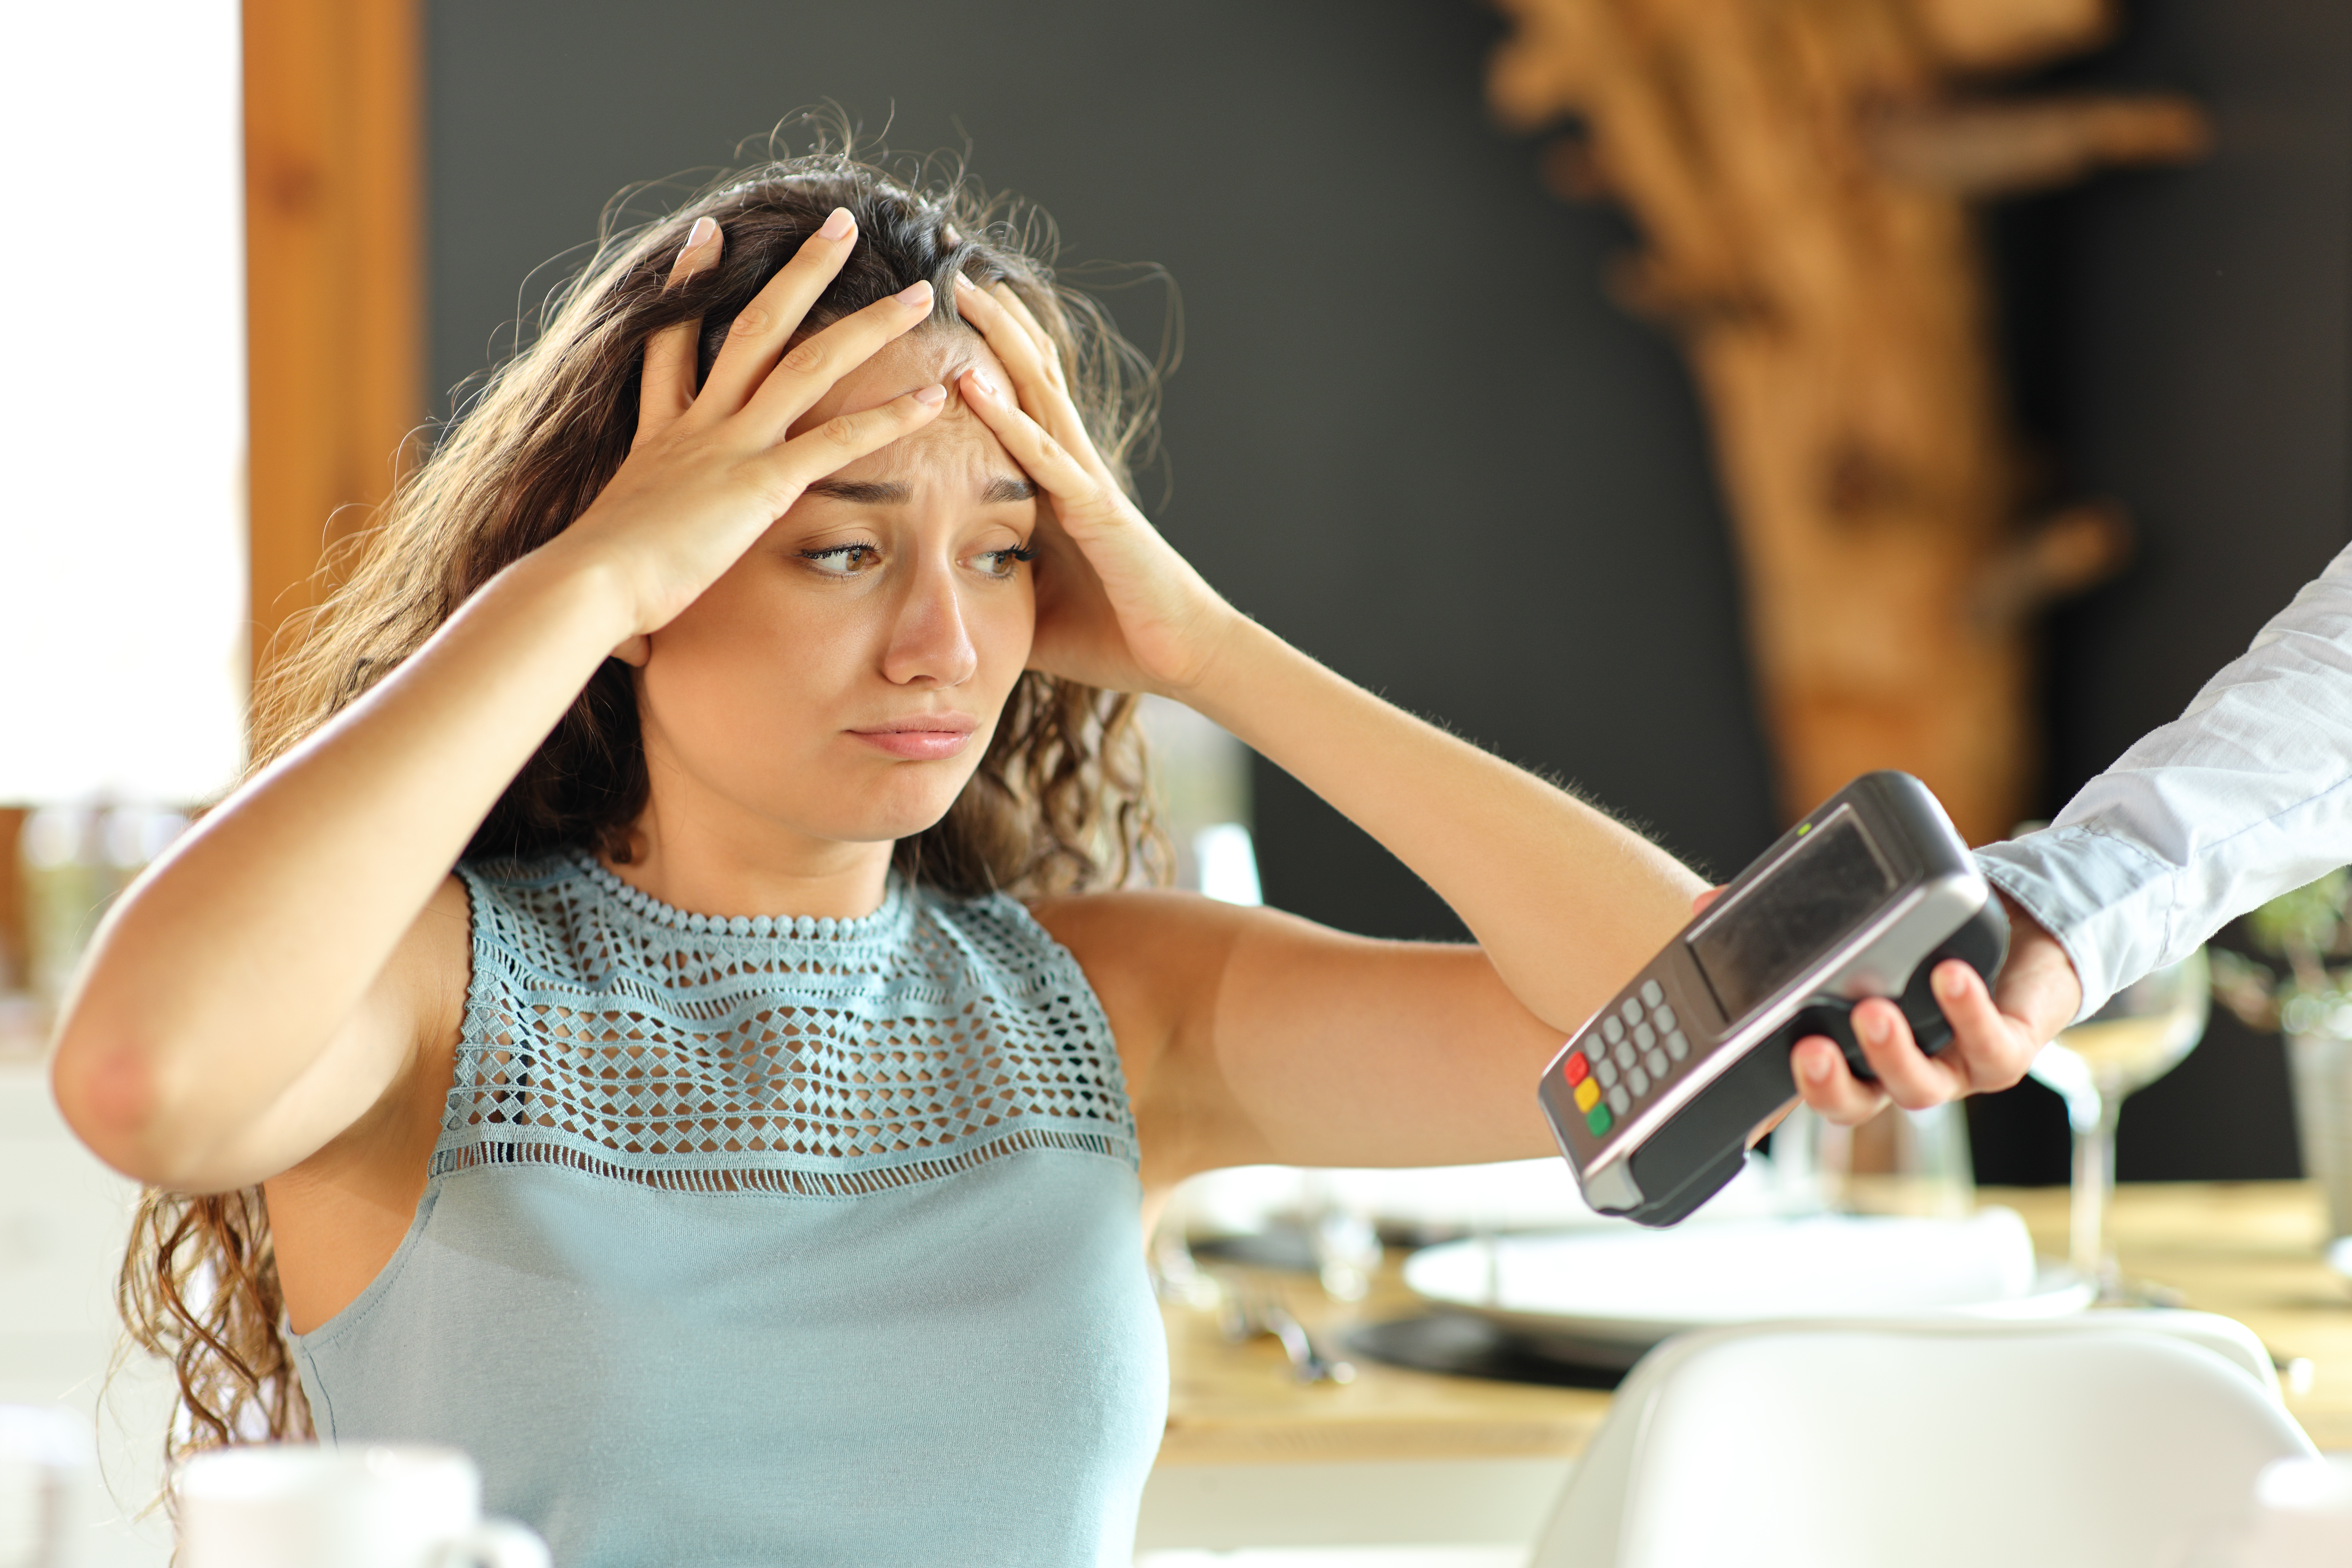 Eine verzweifelt dreinblickende Frau, der eine Kreditkartenmaschine gereicht wird | Quelle: Shutterstock